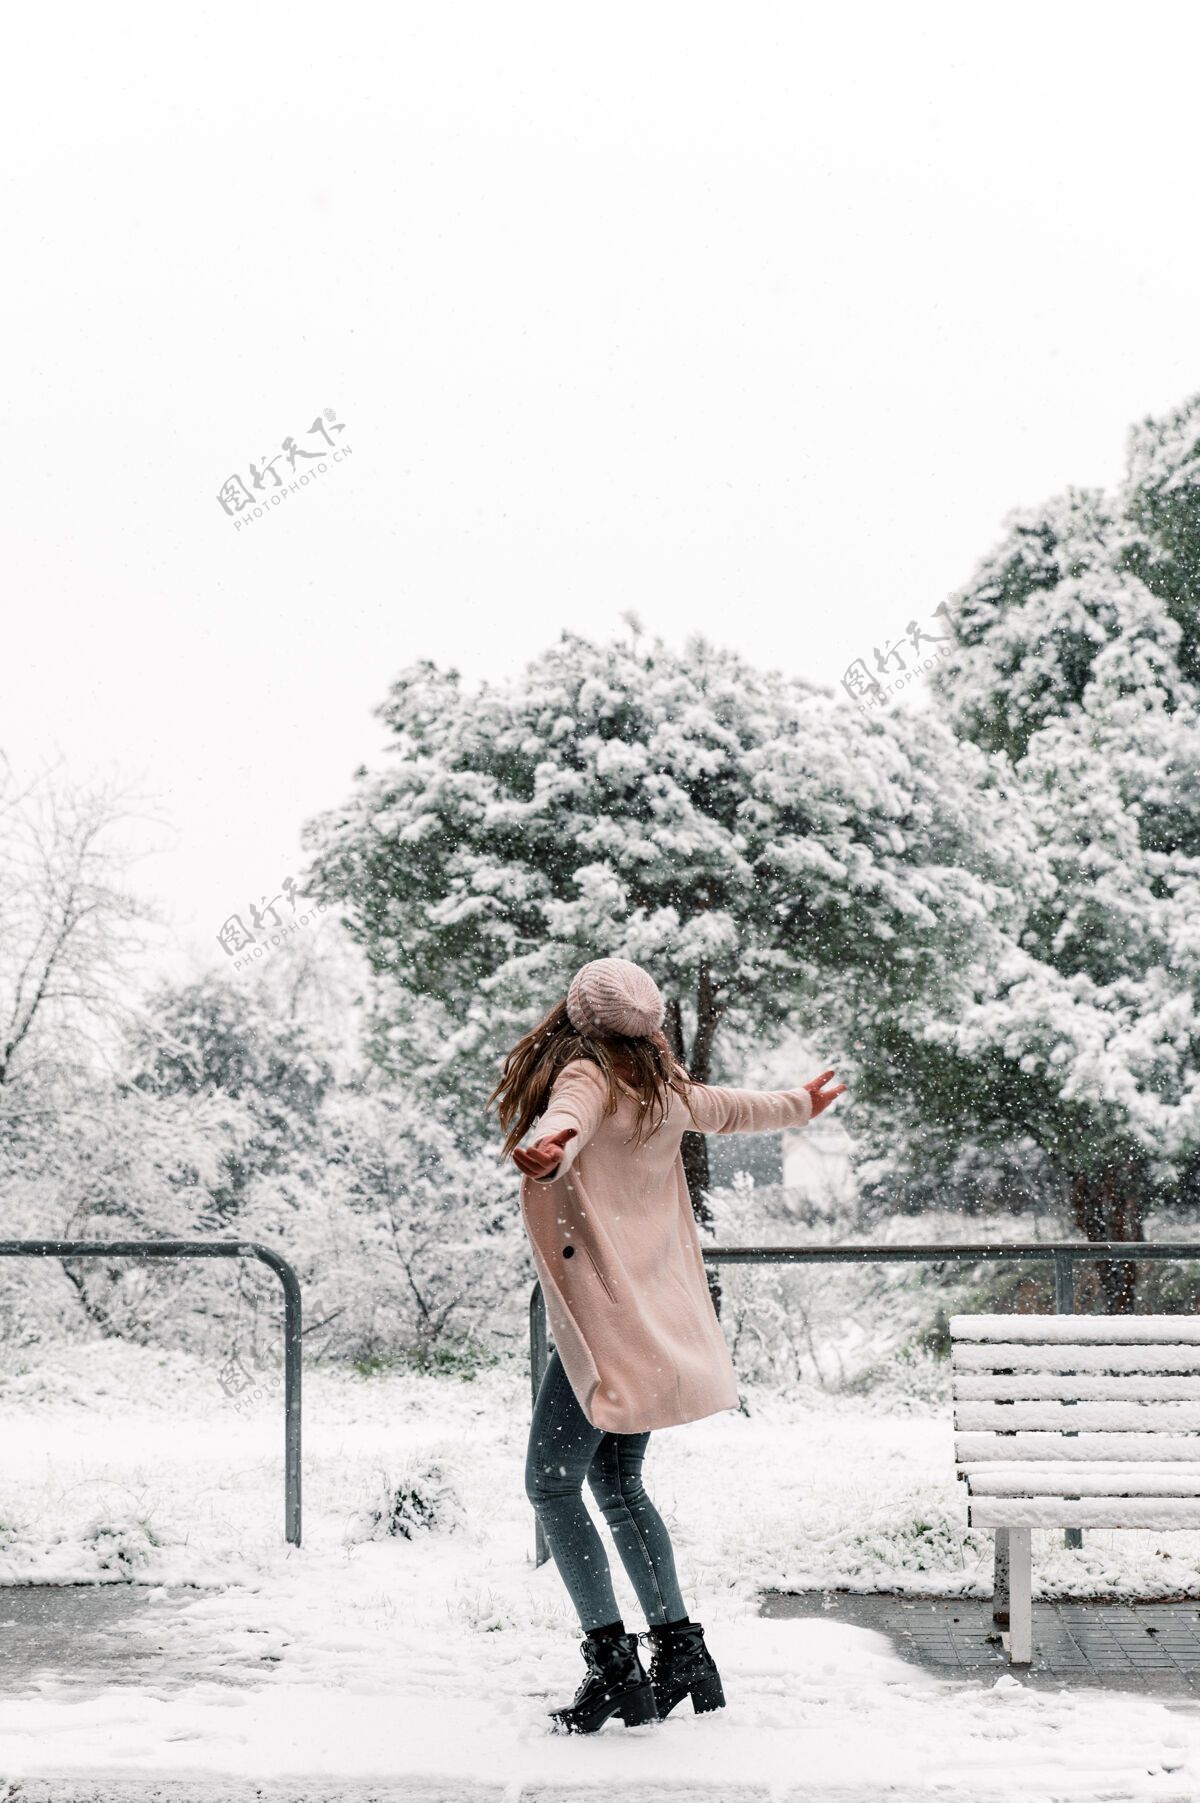 公园一个穿着暖和衣服的无忧无虑的女人 在公园里尽情享受冬天的雪天 张开双臂转过身来积极女人温暖的衣服